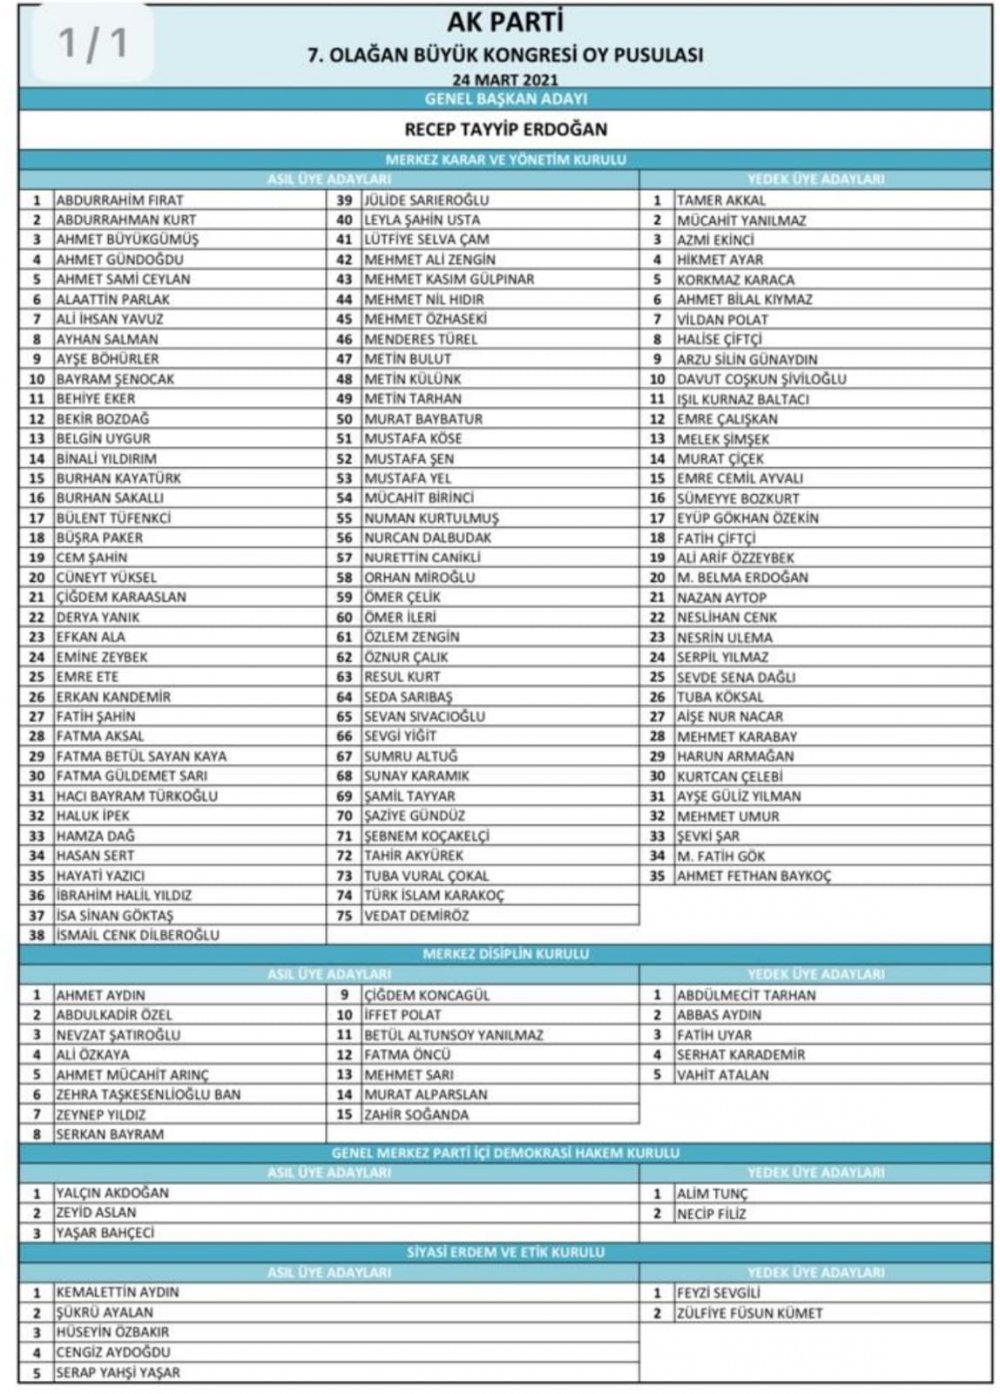 AK Parti yeni MKYK listesi açıklandı! İşte AK Parti MKYK listesi